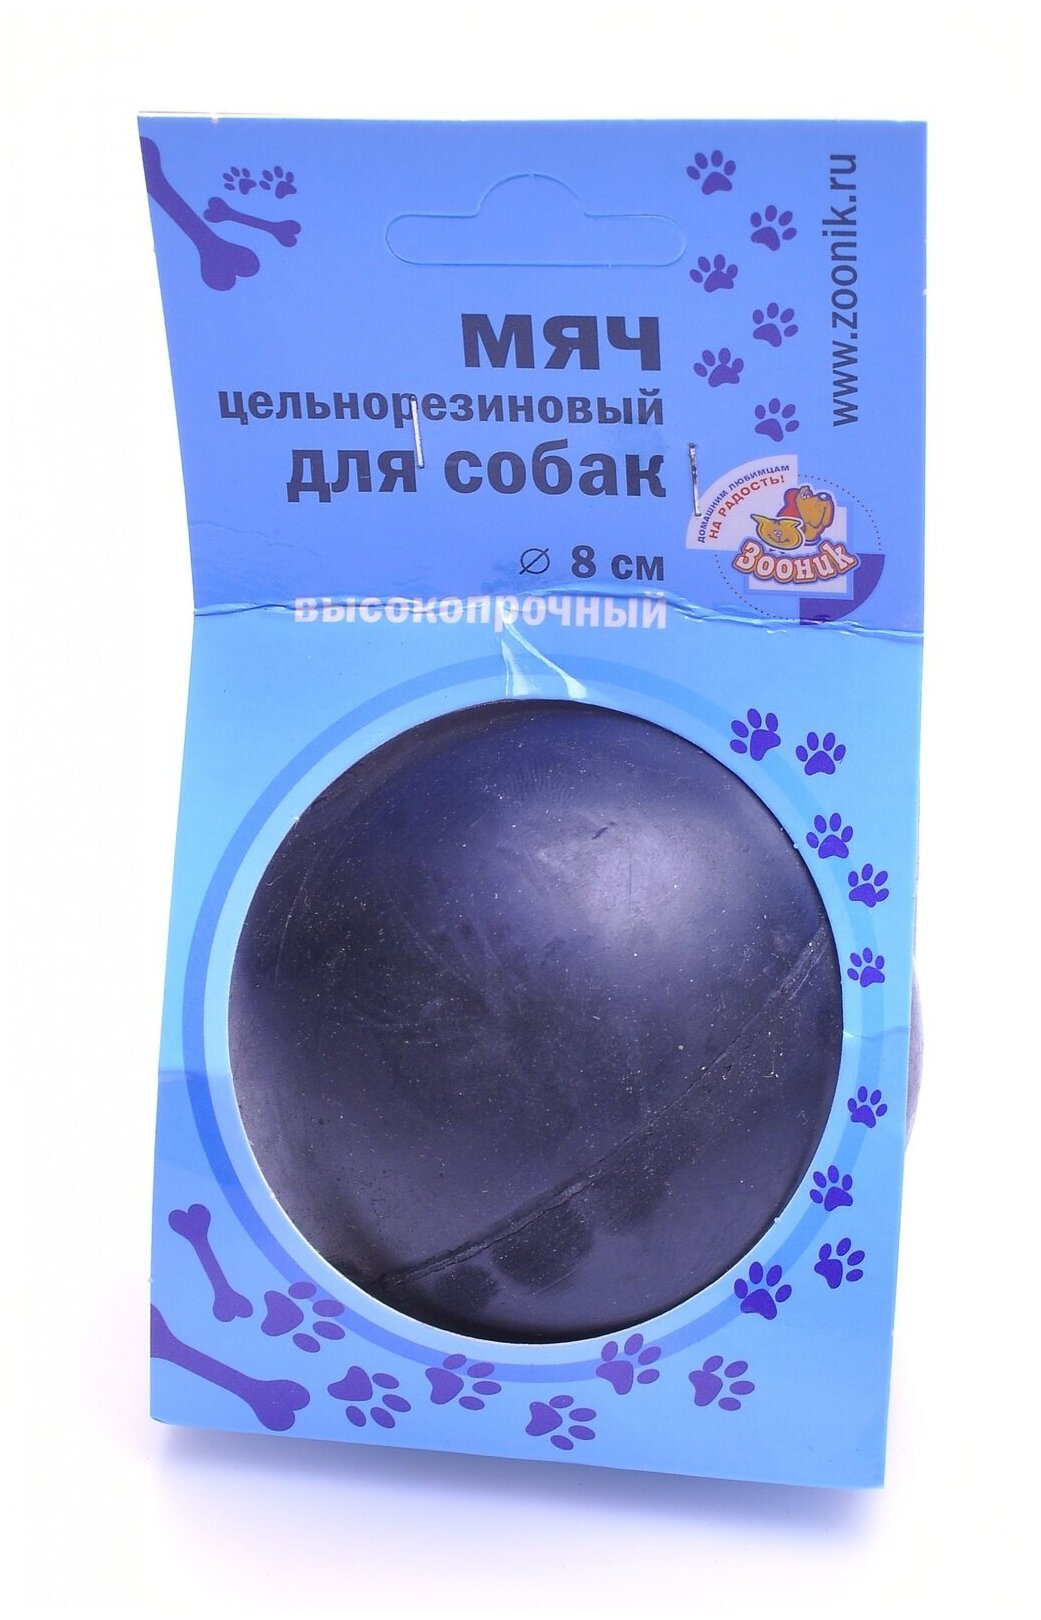 Зооник Игрушка для собак "Мяч цельнорезиновый черный" 8см 164120, 0,35 кг